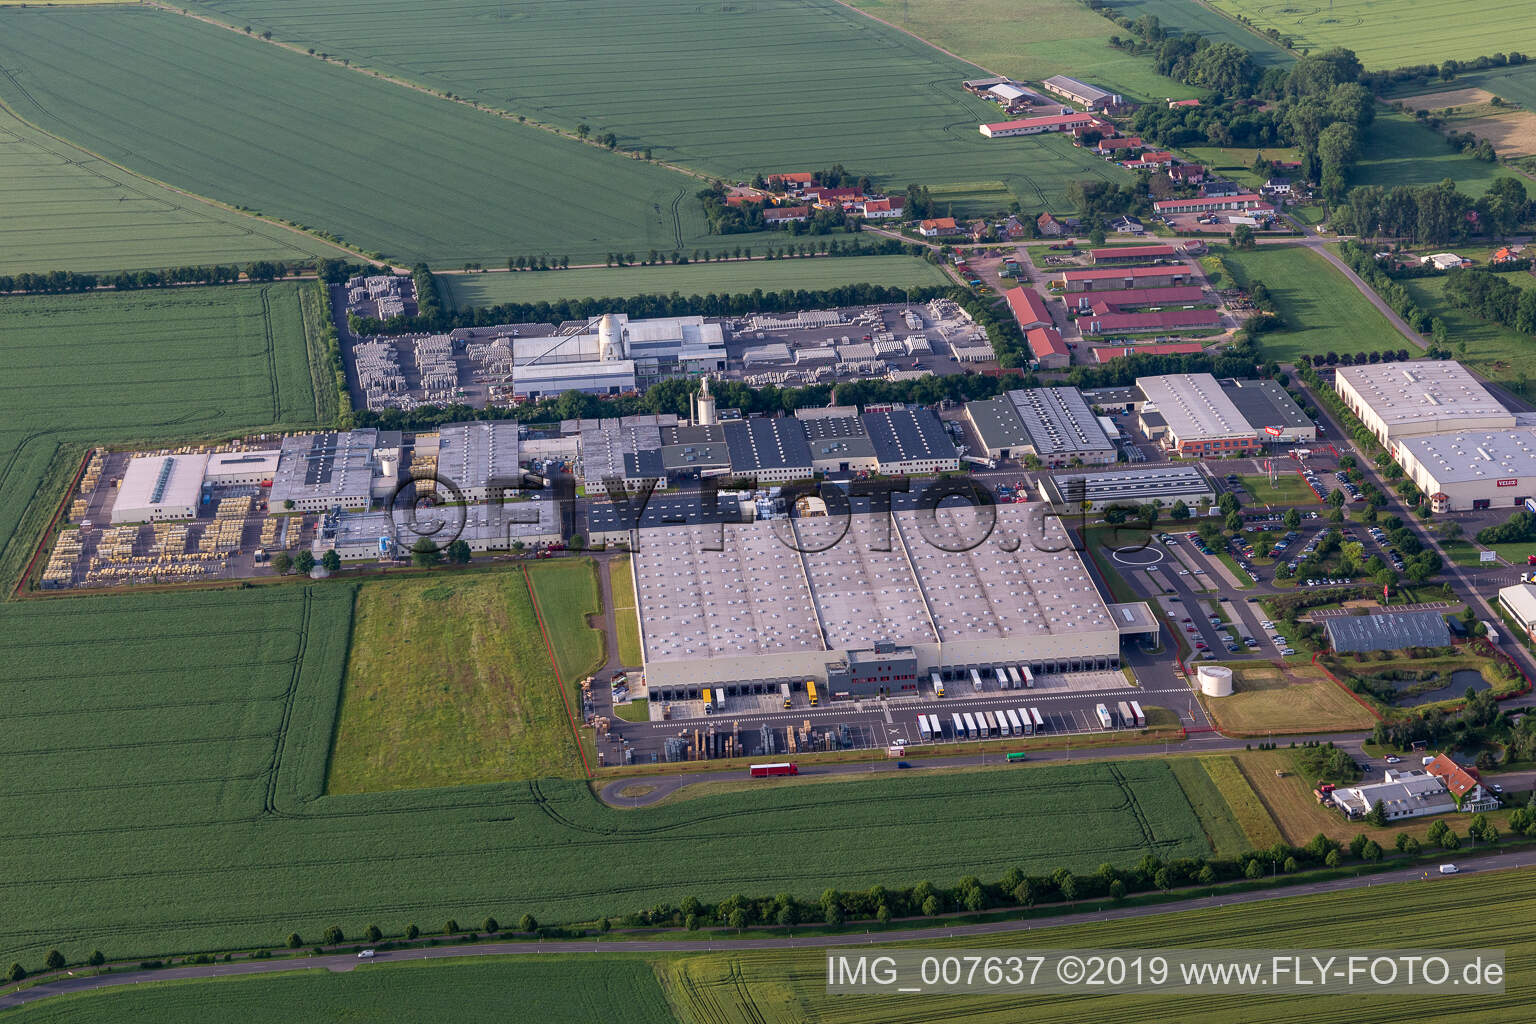 Vue aérienne de Finger Beton Sonneborn GmbH & Co. KG, JTJ Sonneborn Industrie GmbH à Sonneborn dans le département Thuringe, Allemagne